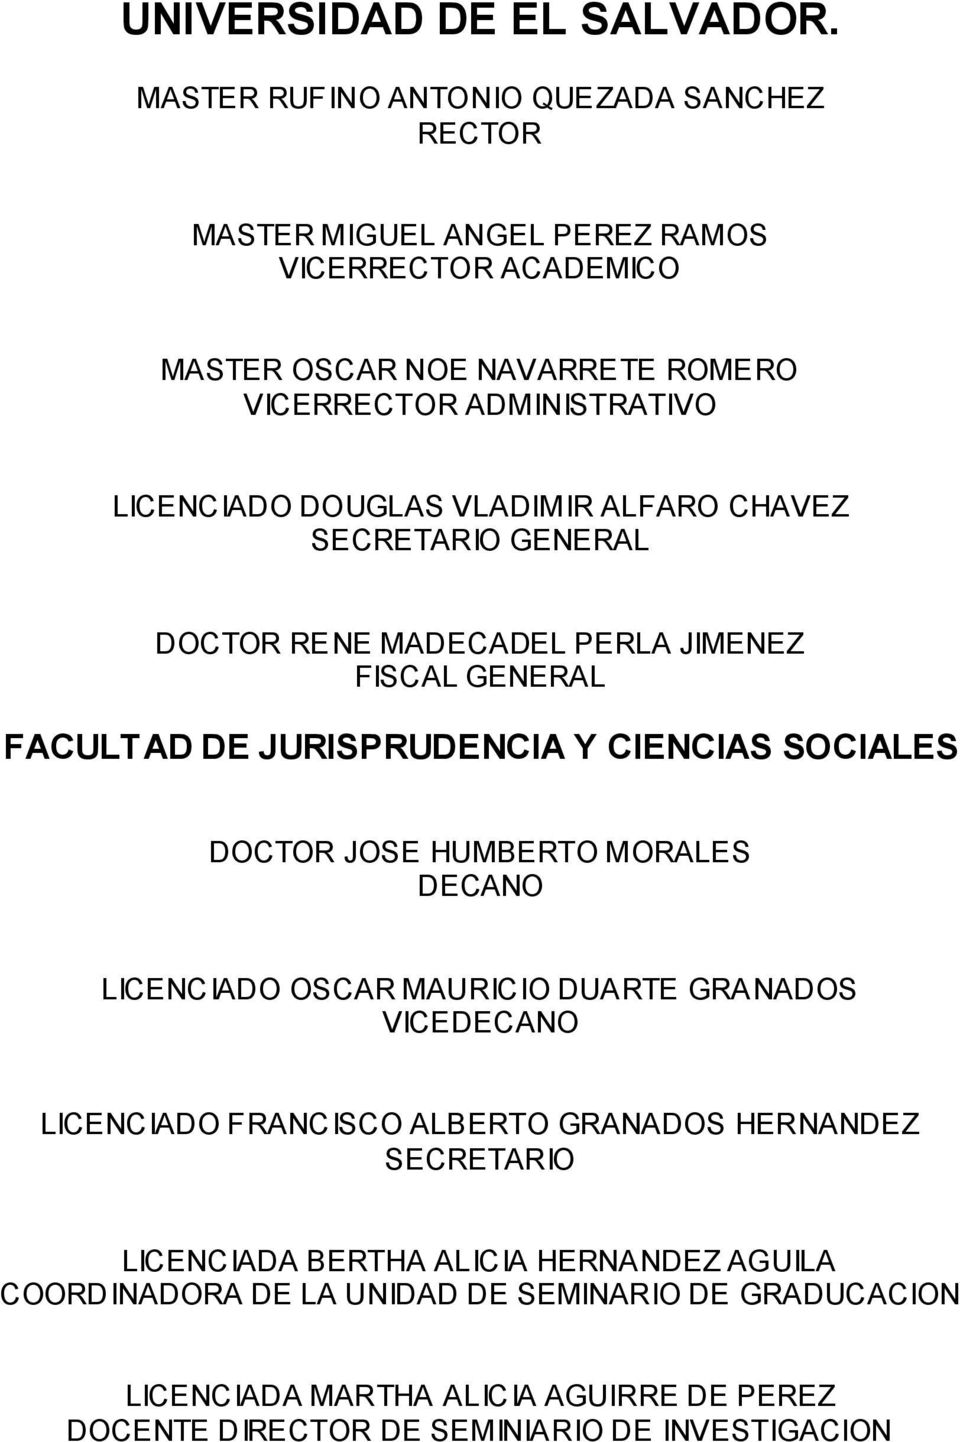 LICENCIADO DOUGLAS VLADIMIR ALFARO CHAVEZ SECRETARIO GENERAL DOCTOR RENE MADECADEL PERLA JIMENEZ FISCAL GENERAL FACULTAD DE JURISPRUDENCIA Y CIENCIAS SOCIALES DOCTOR